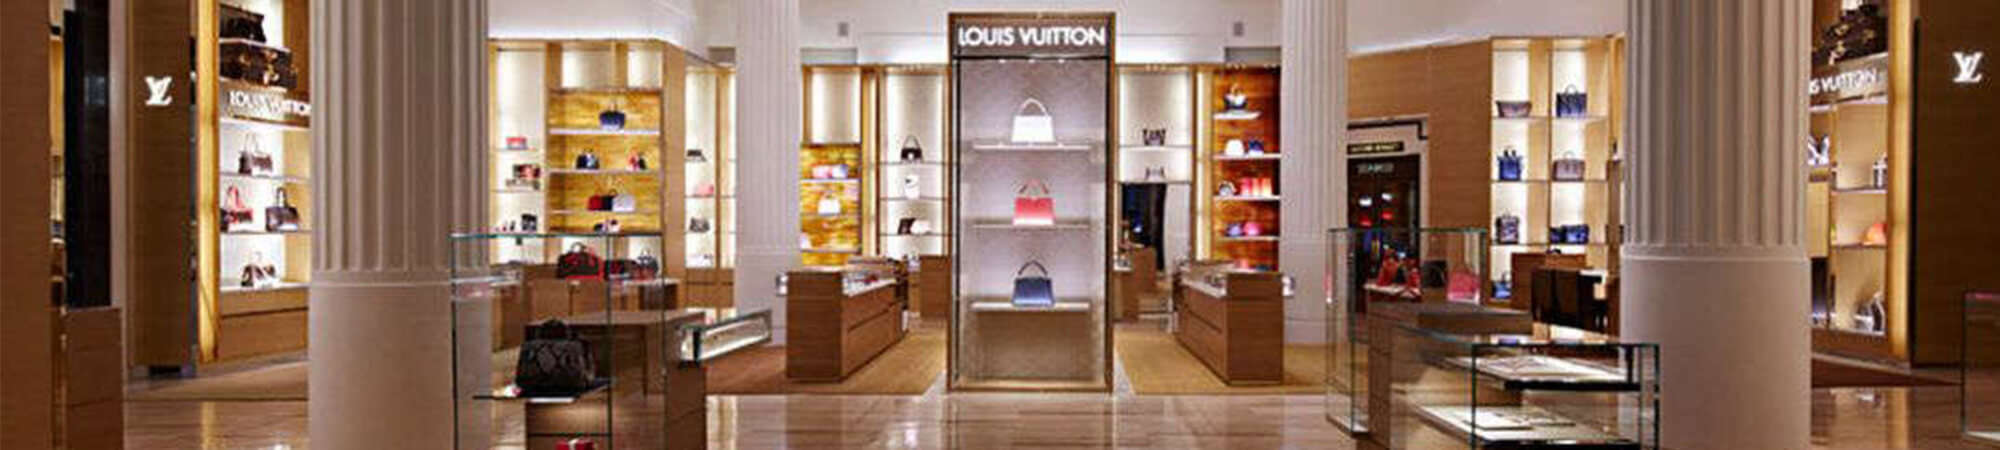 Louis Vuitton London Selfridges store, United Kingdom